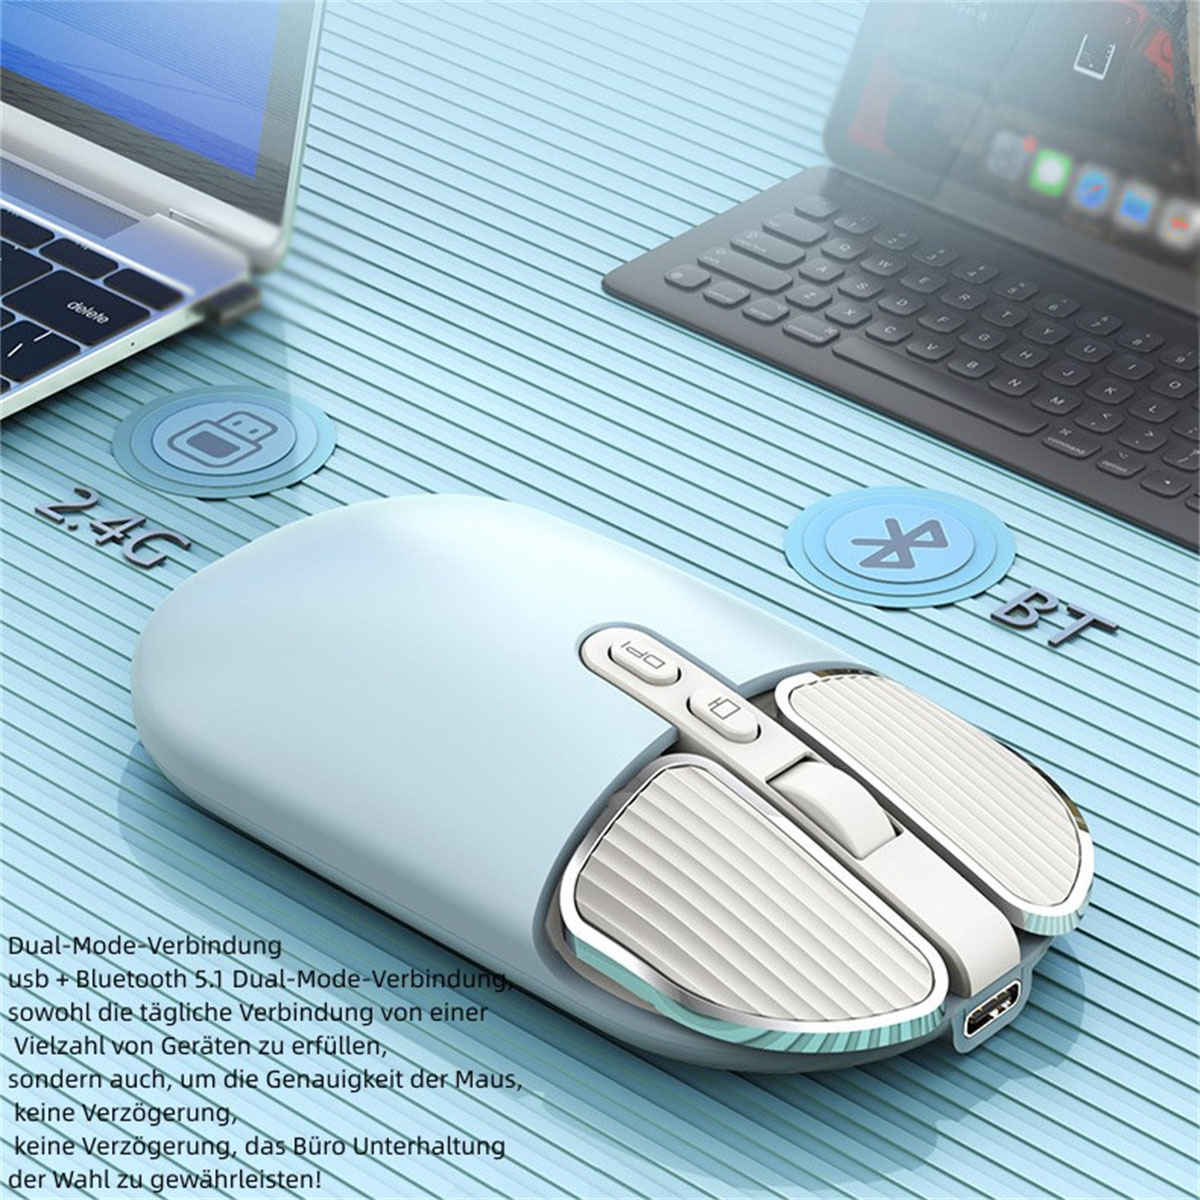 Dual-Mode-Verbindung, - SYNTEK M203 Rosa Wireless präzise Positionierung Mouse Maus,